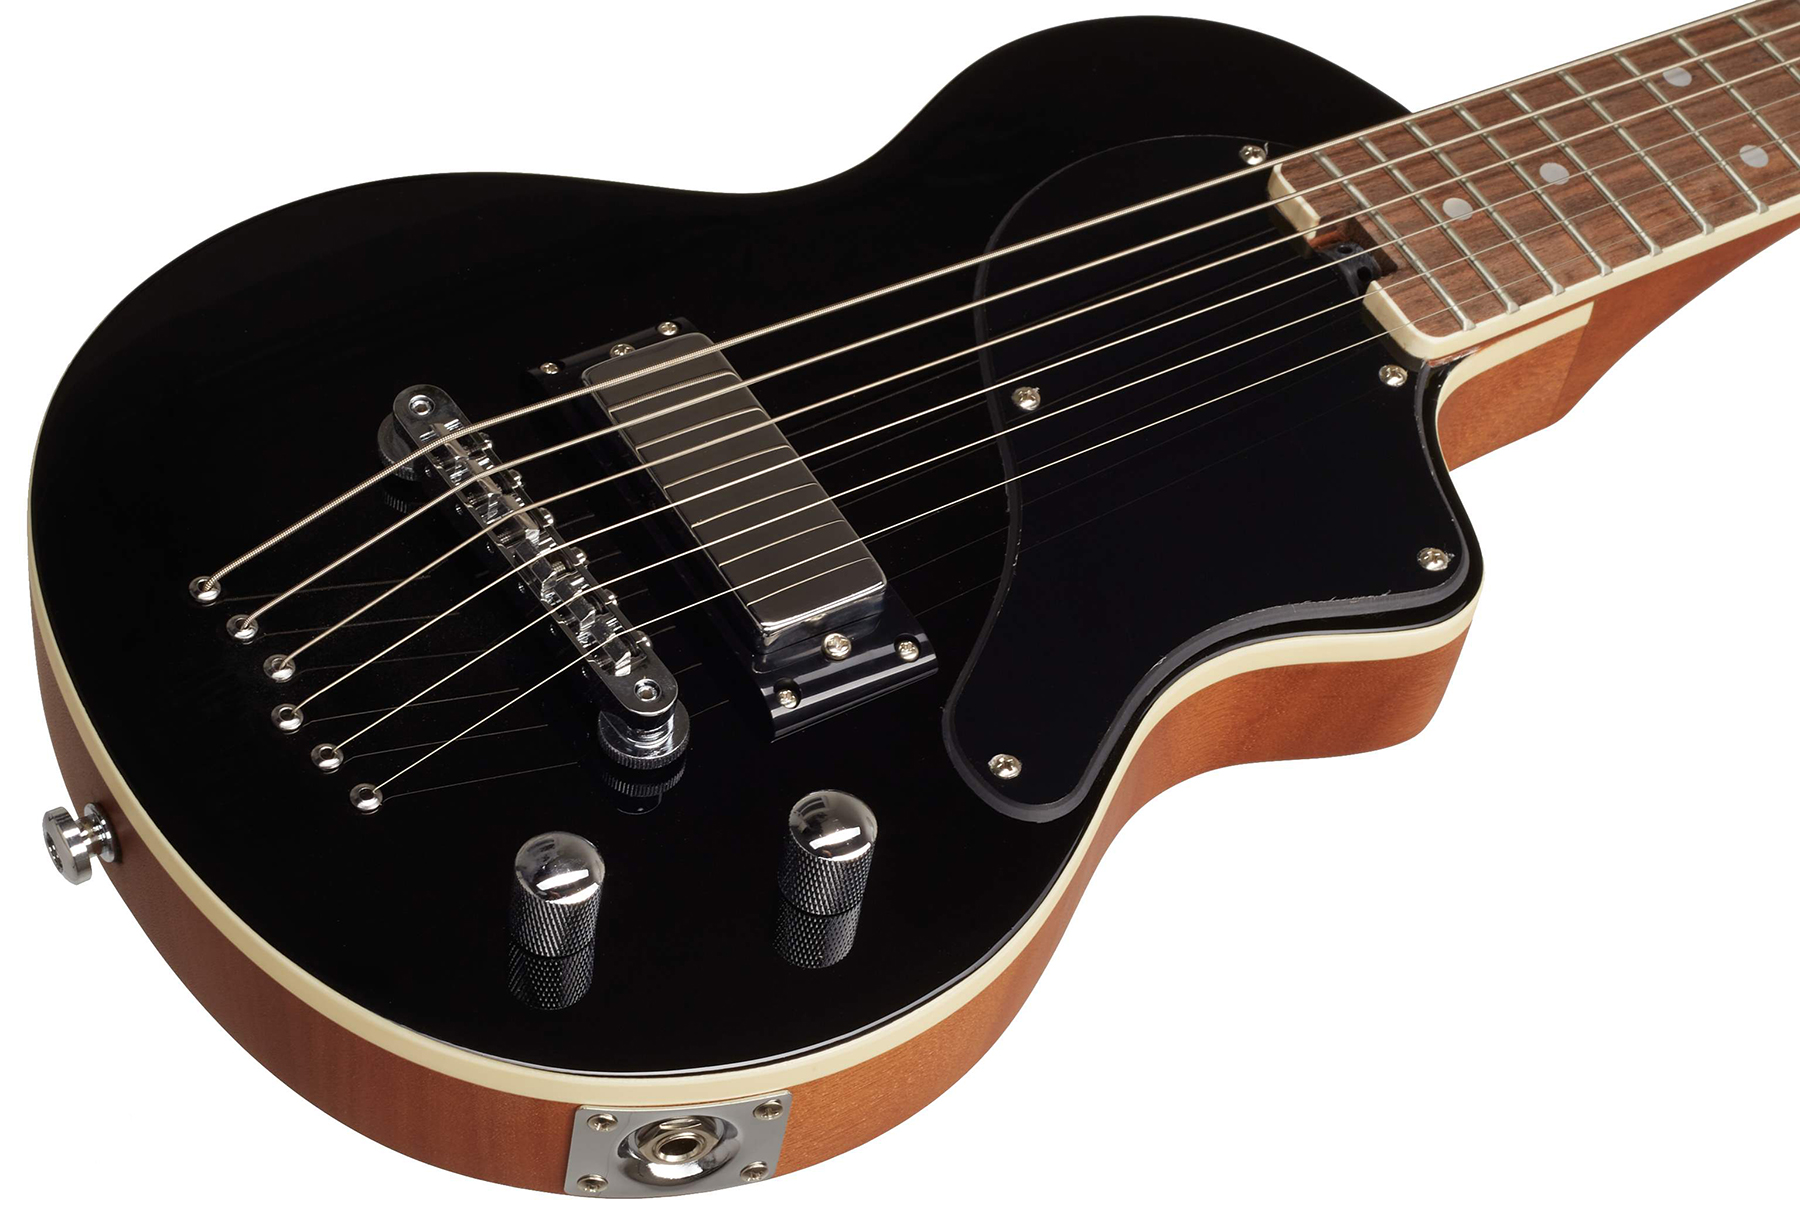 Blackstar Carry-on Travel Guitar Standard Pack +amplug2 Fly +housse - Jet Black - Electric guitar set - Variation 3